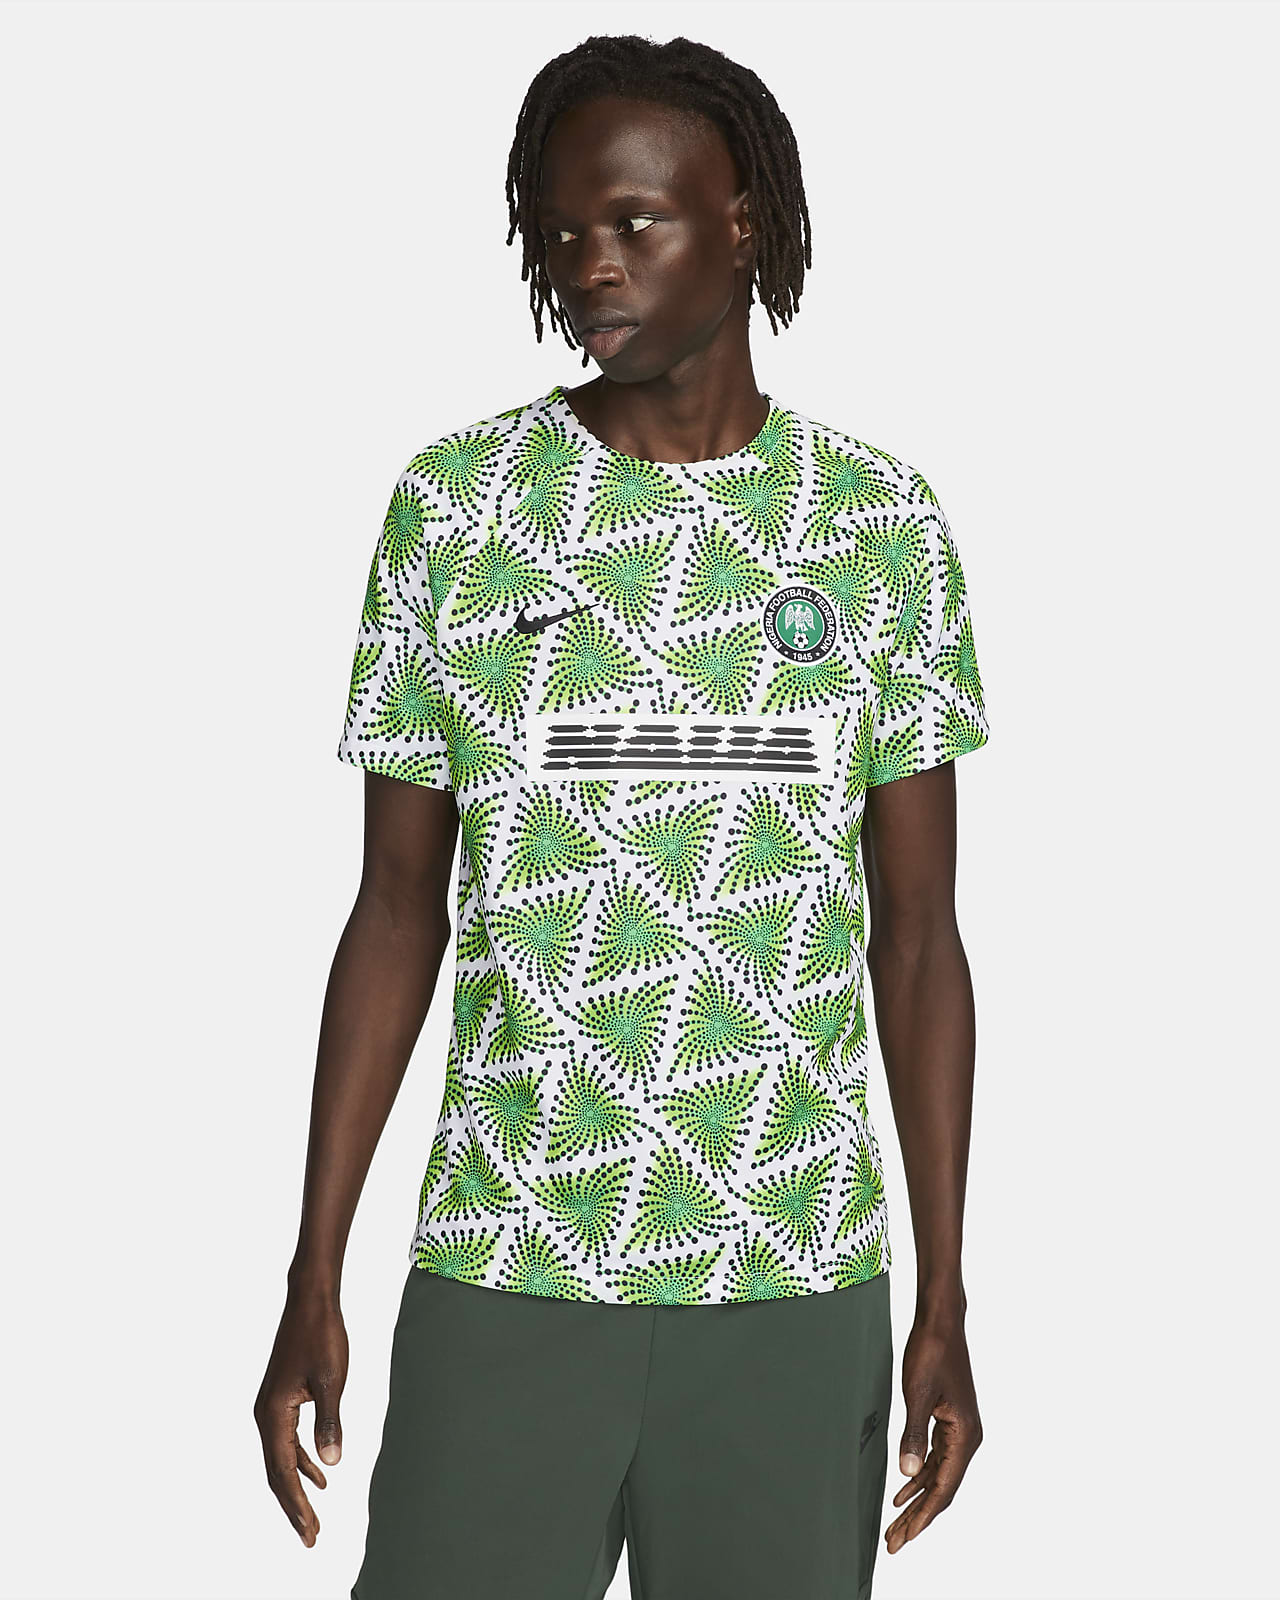 Nigeria Men's Nike Dri-FIT Pre-Match Soccer Top